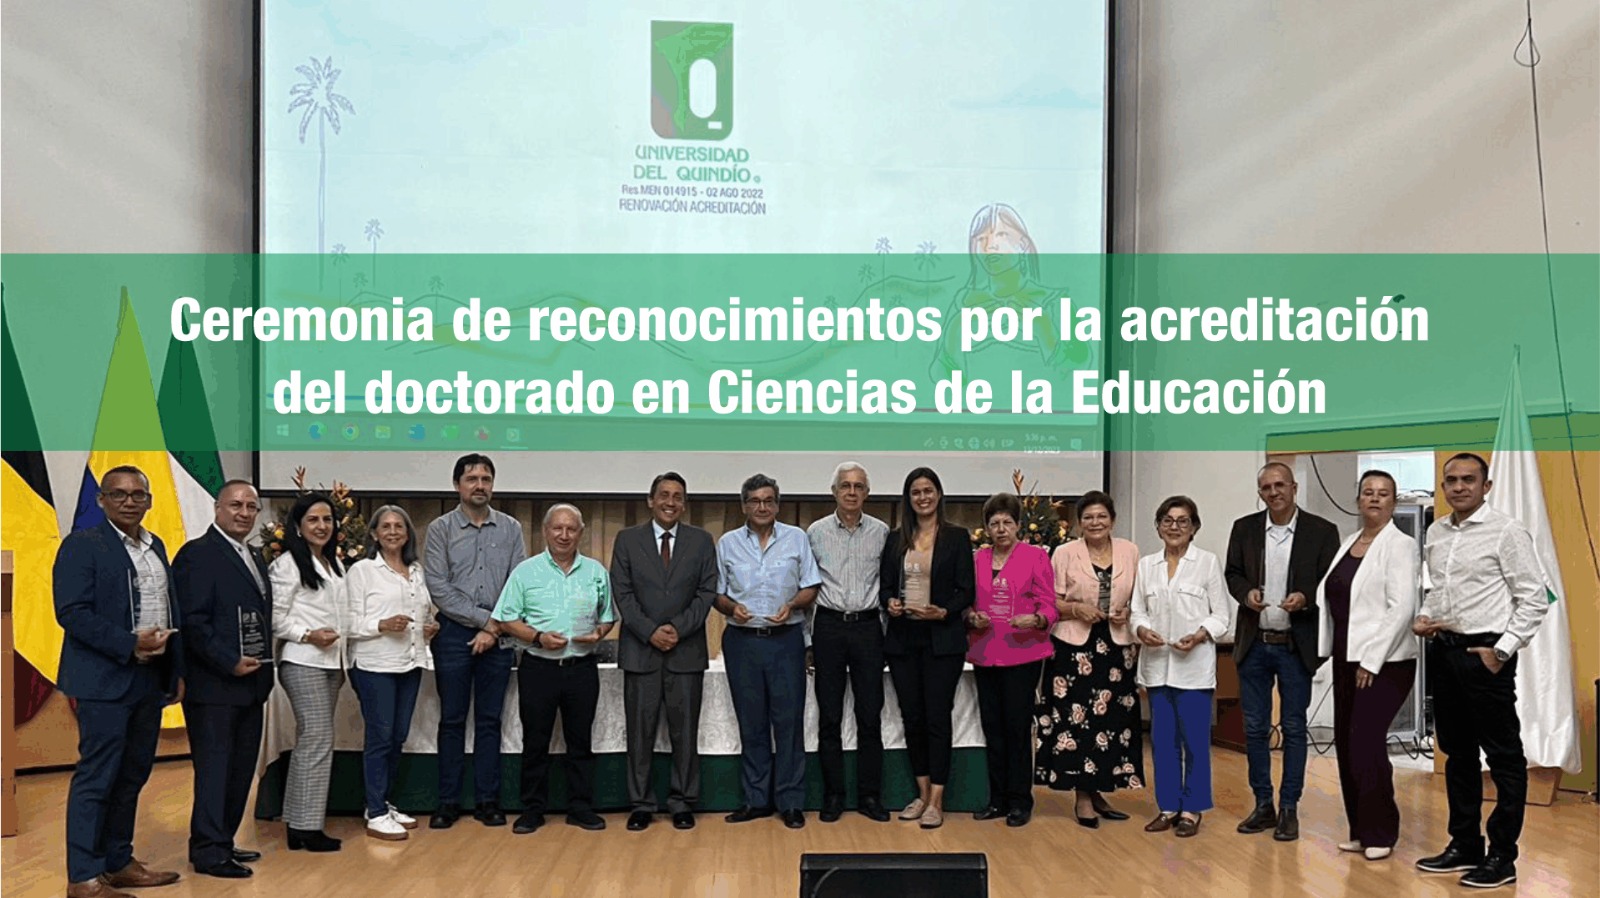 Doctorado en Ciencias de la Educación, primero en recibir acreditación de Alta Calidad en Colombia